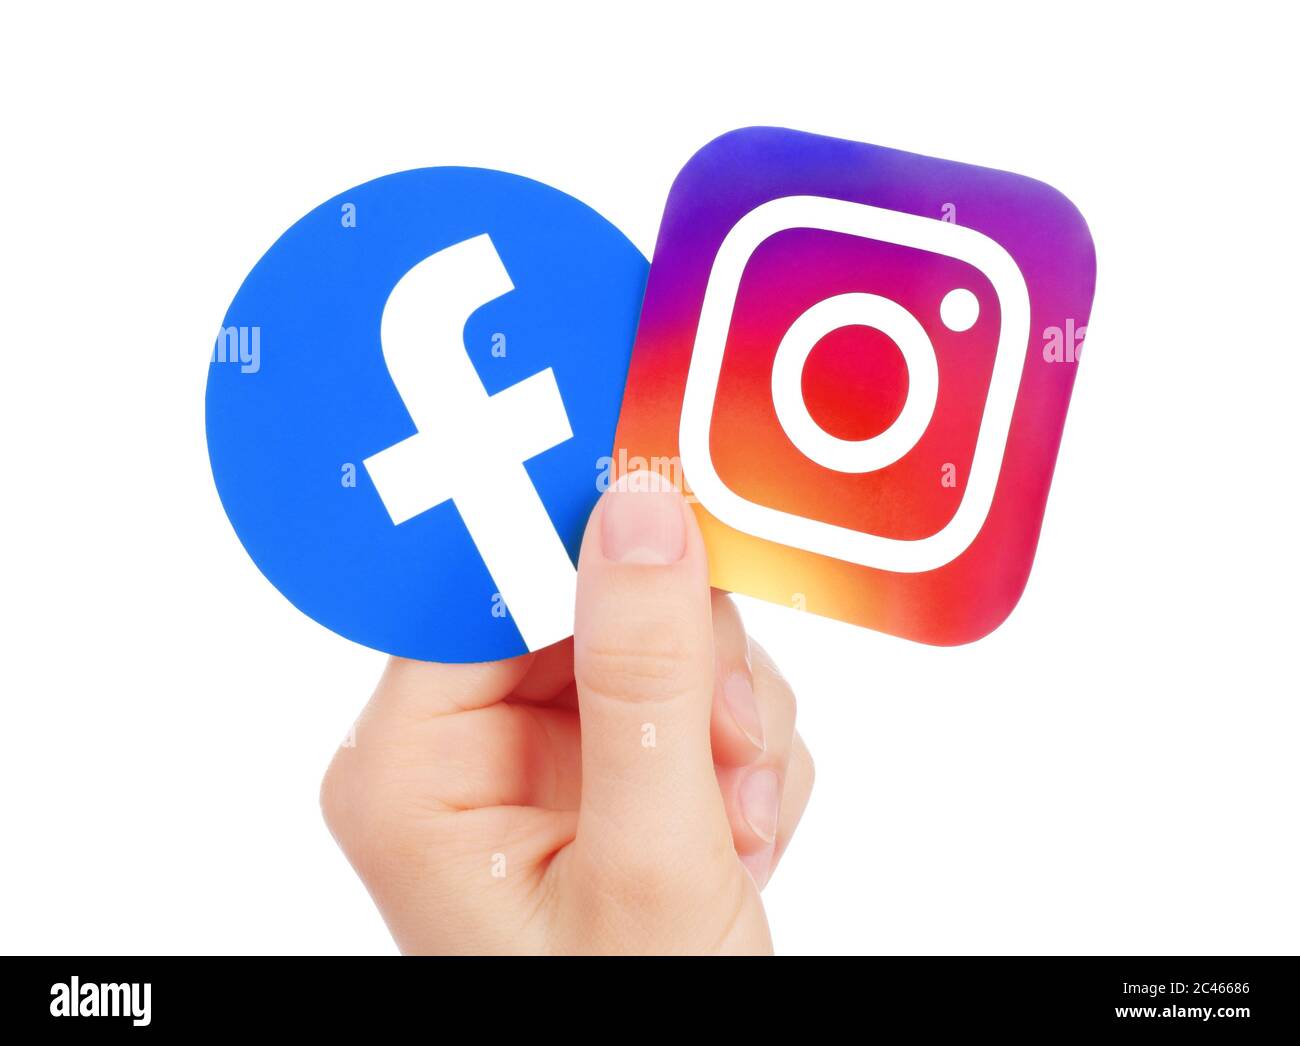 Kiew, Ukraine - 15. Mai 2019: Hand hält neues Facebook-Logo und Instagram auf Papier gedruckt. Instagram ist ein Foto und Video-Sharing Social Networking se Stockfoto